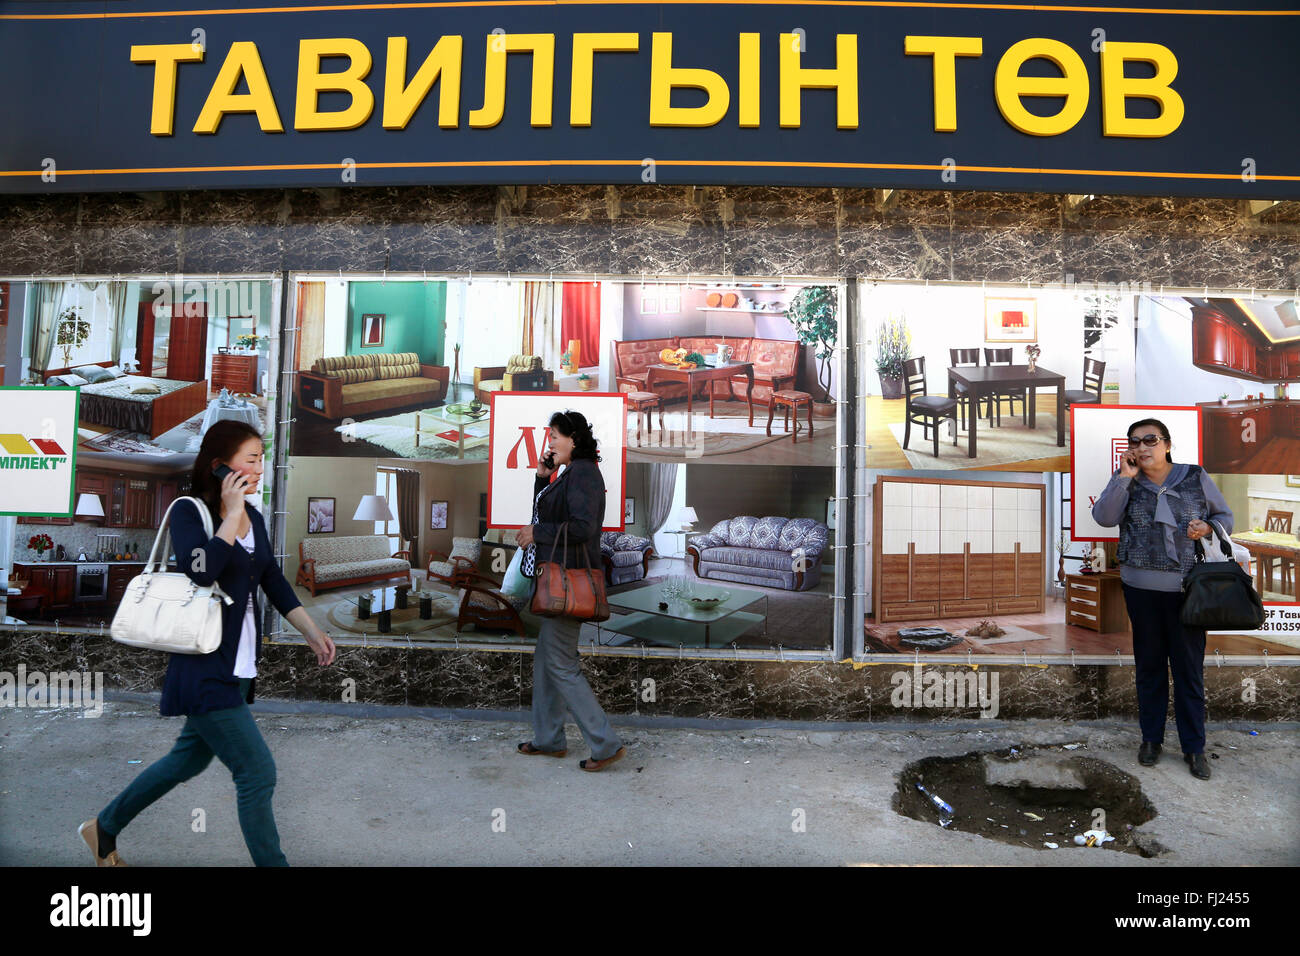 La femme marche dans les rues de Ulaanbatatr devant un magasin de meubles - la culture nomade Banque D'Images